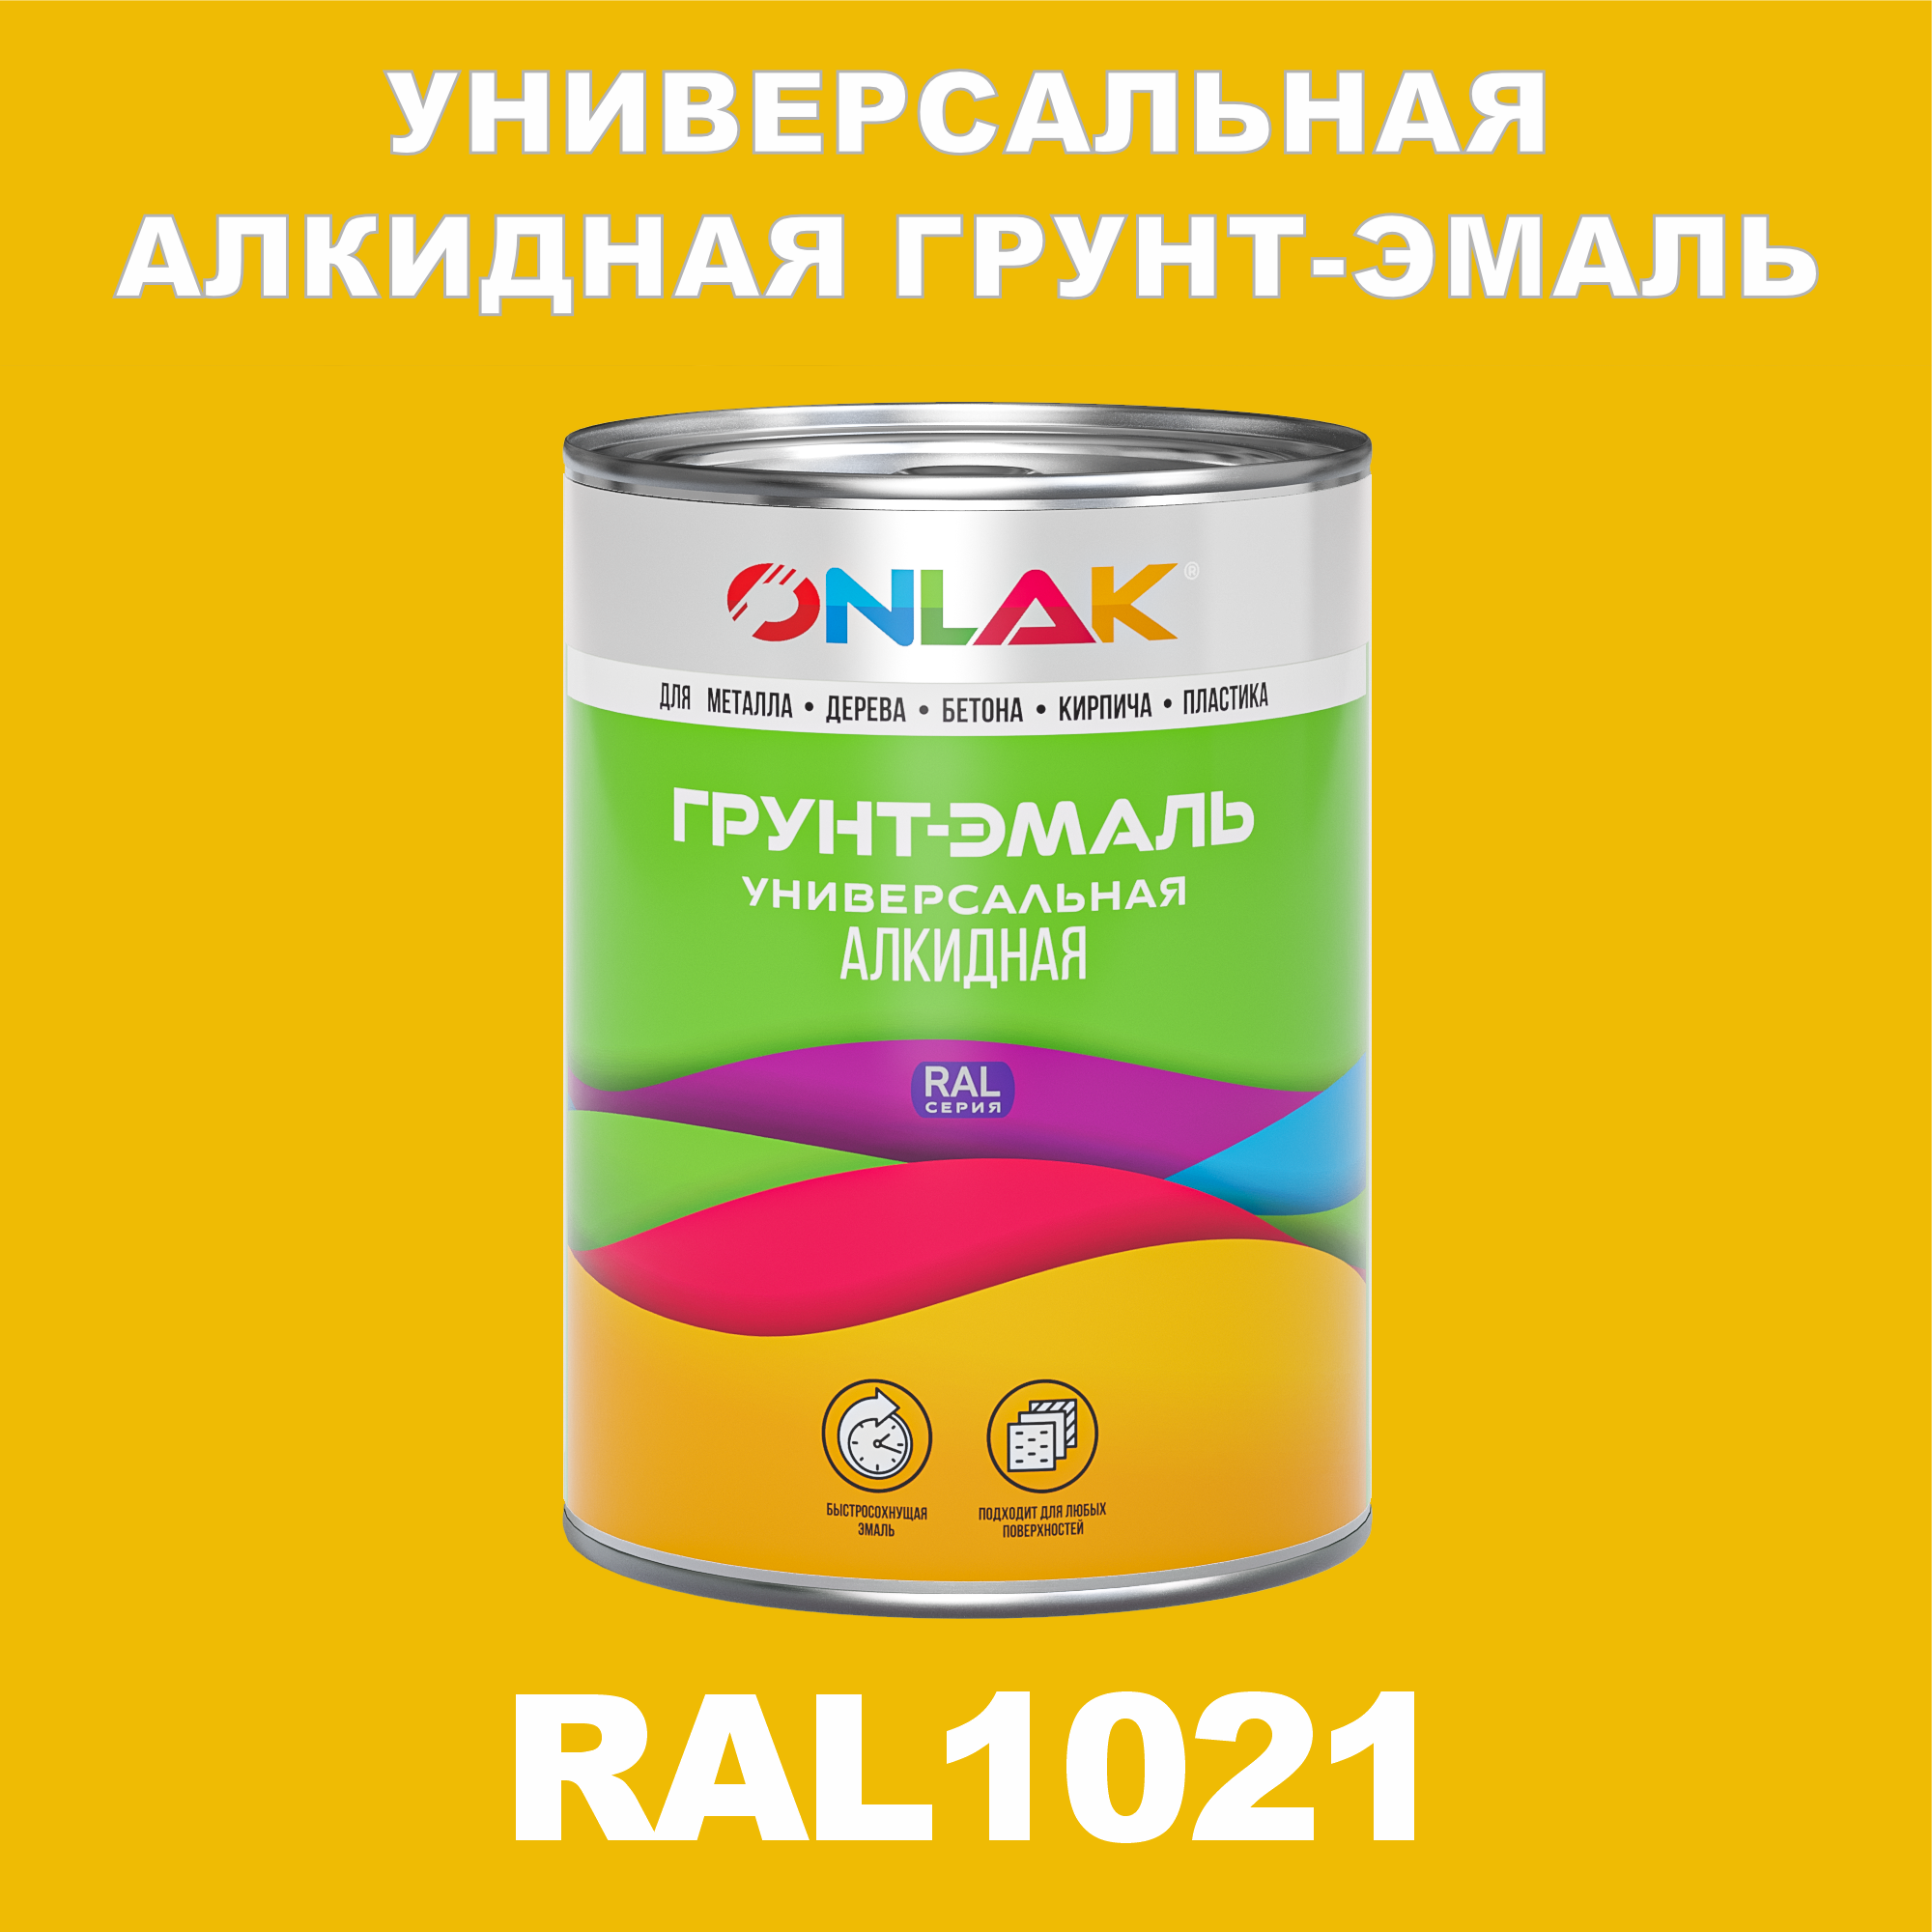 Грунт-эмаль ONLAK 1К RAL1021 антикоррозионная алкидная по металлу по ржавчине 1 кг грунт эмаль yollo по ржавчине алкидная зеленая 0 9 кг